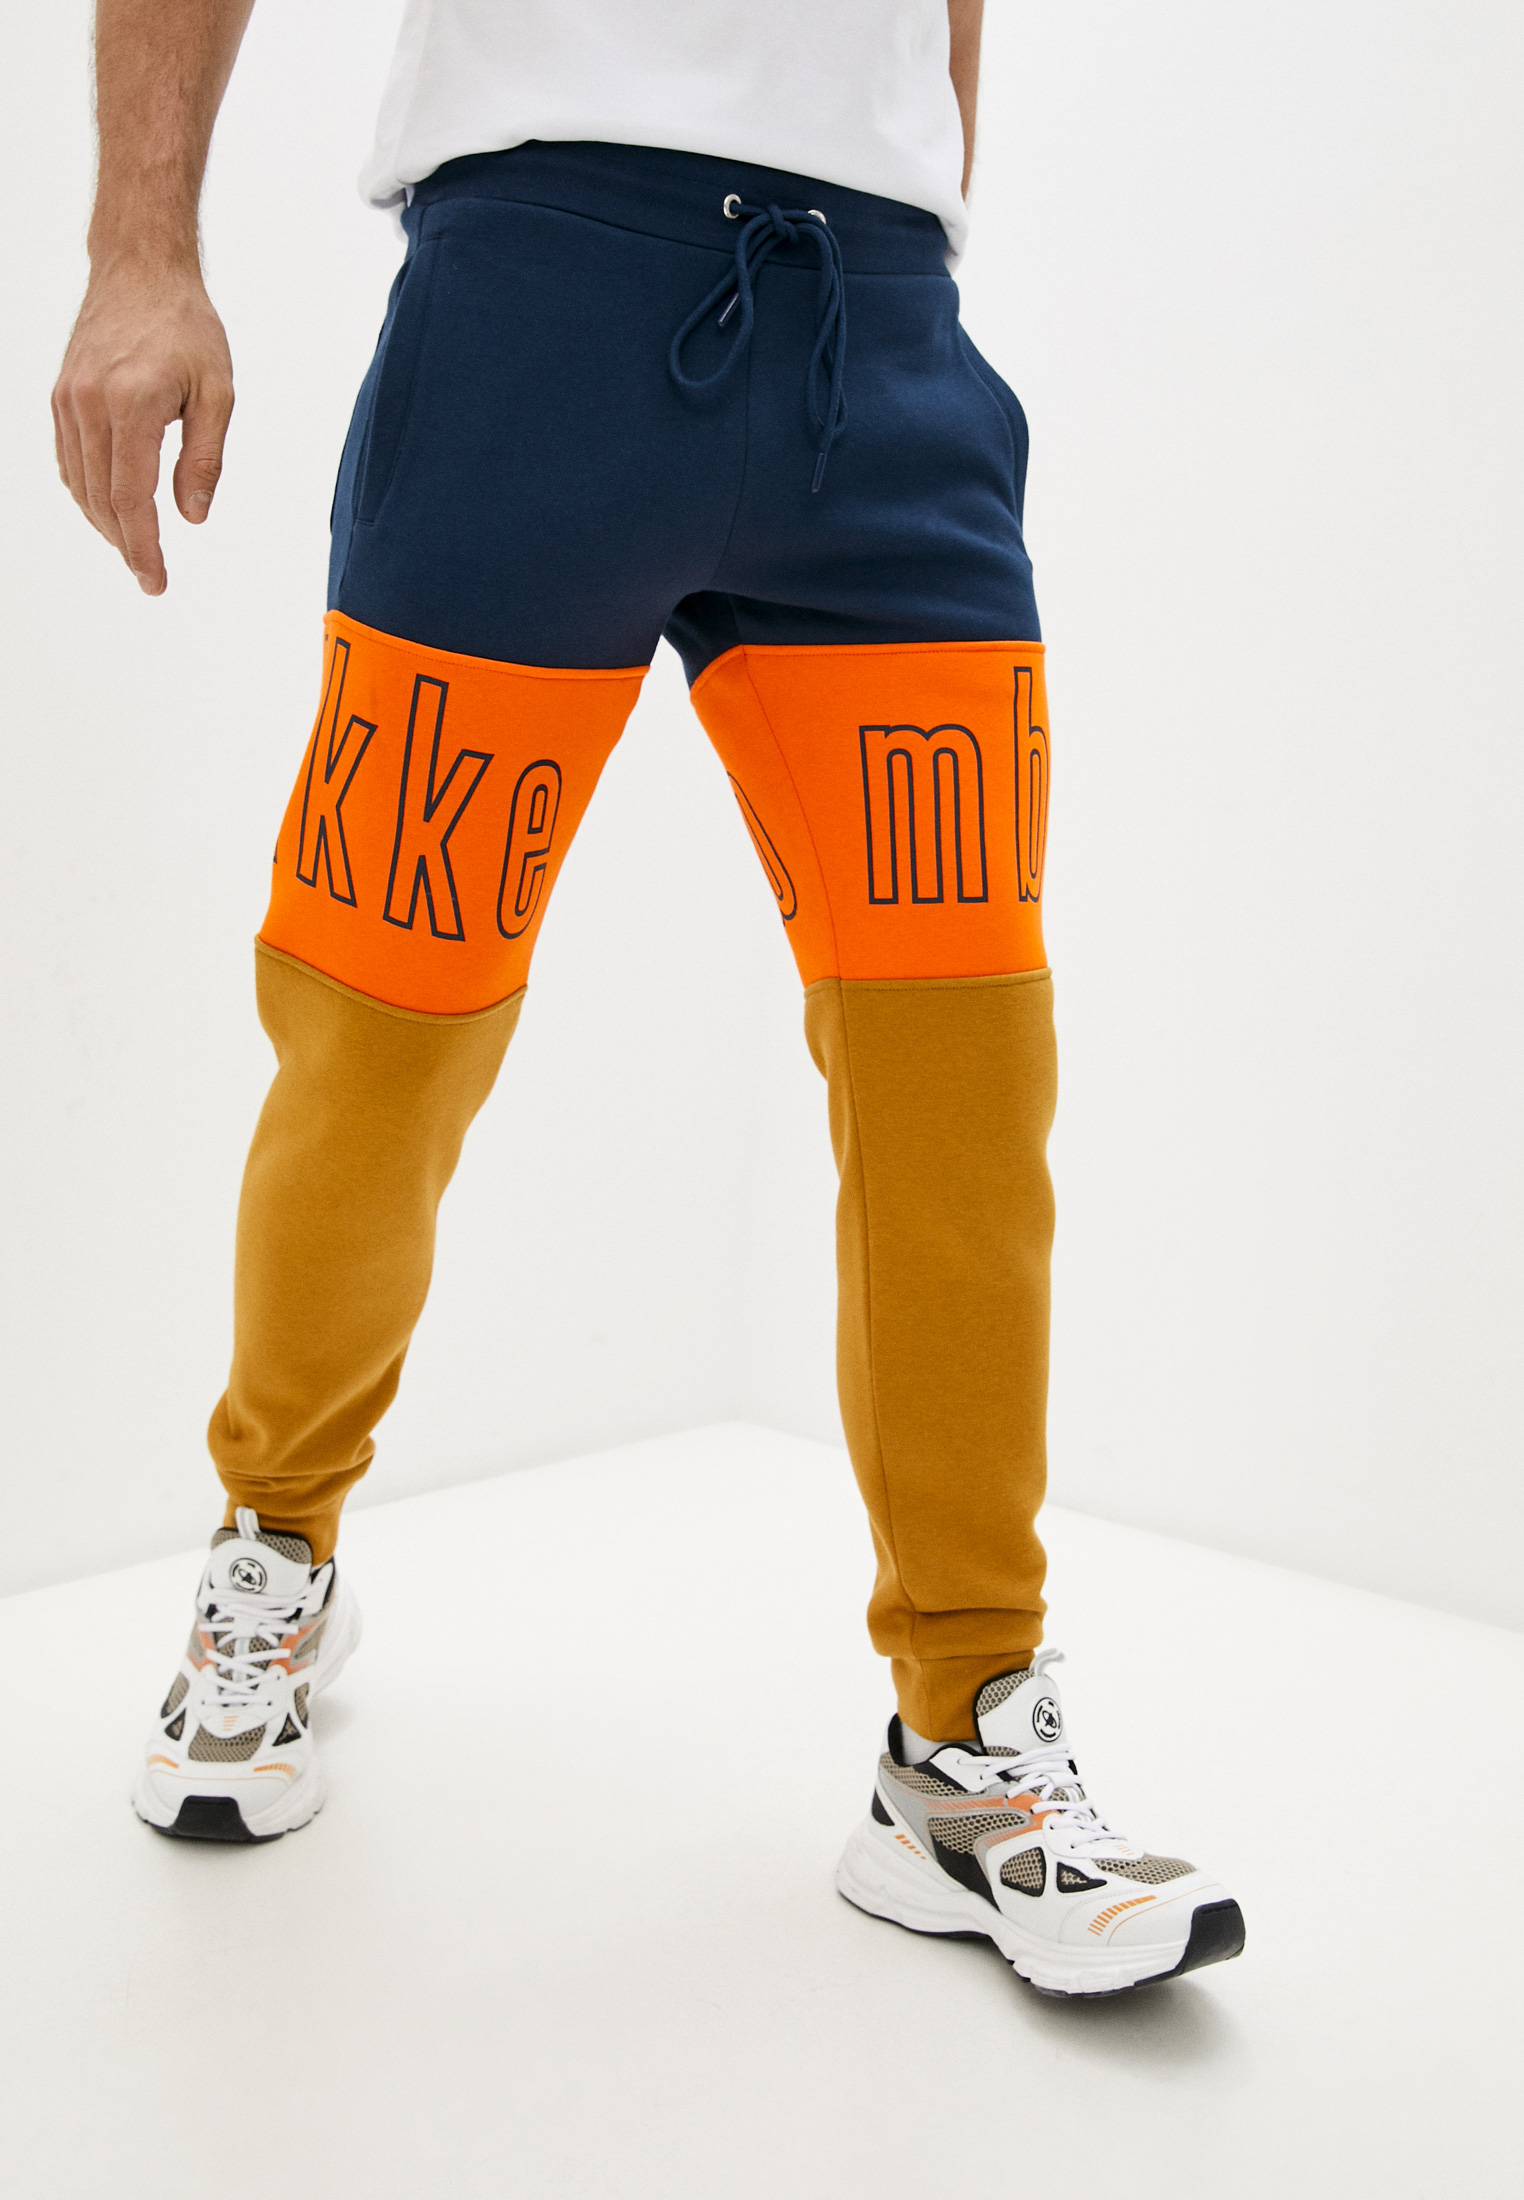 Мужские спортивные брюки Bikkembergs (Биккембергс) C 1 125 4K M 4175: изображение 1